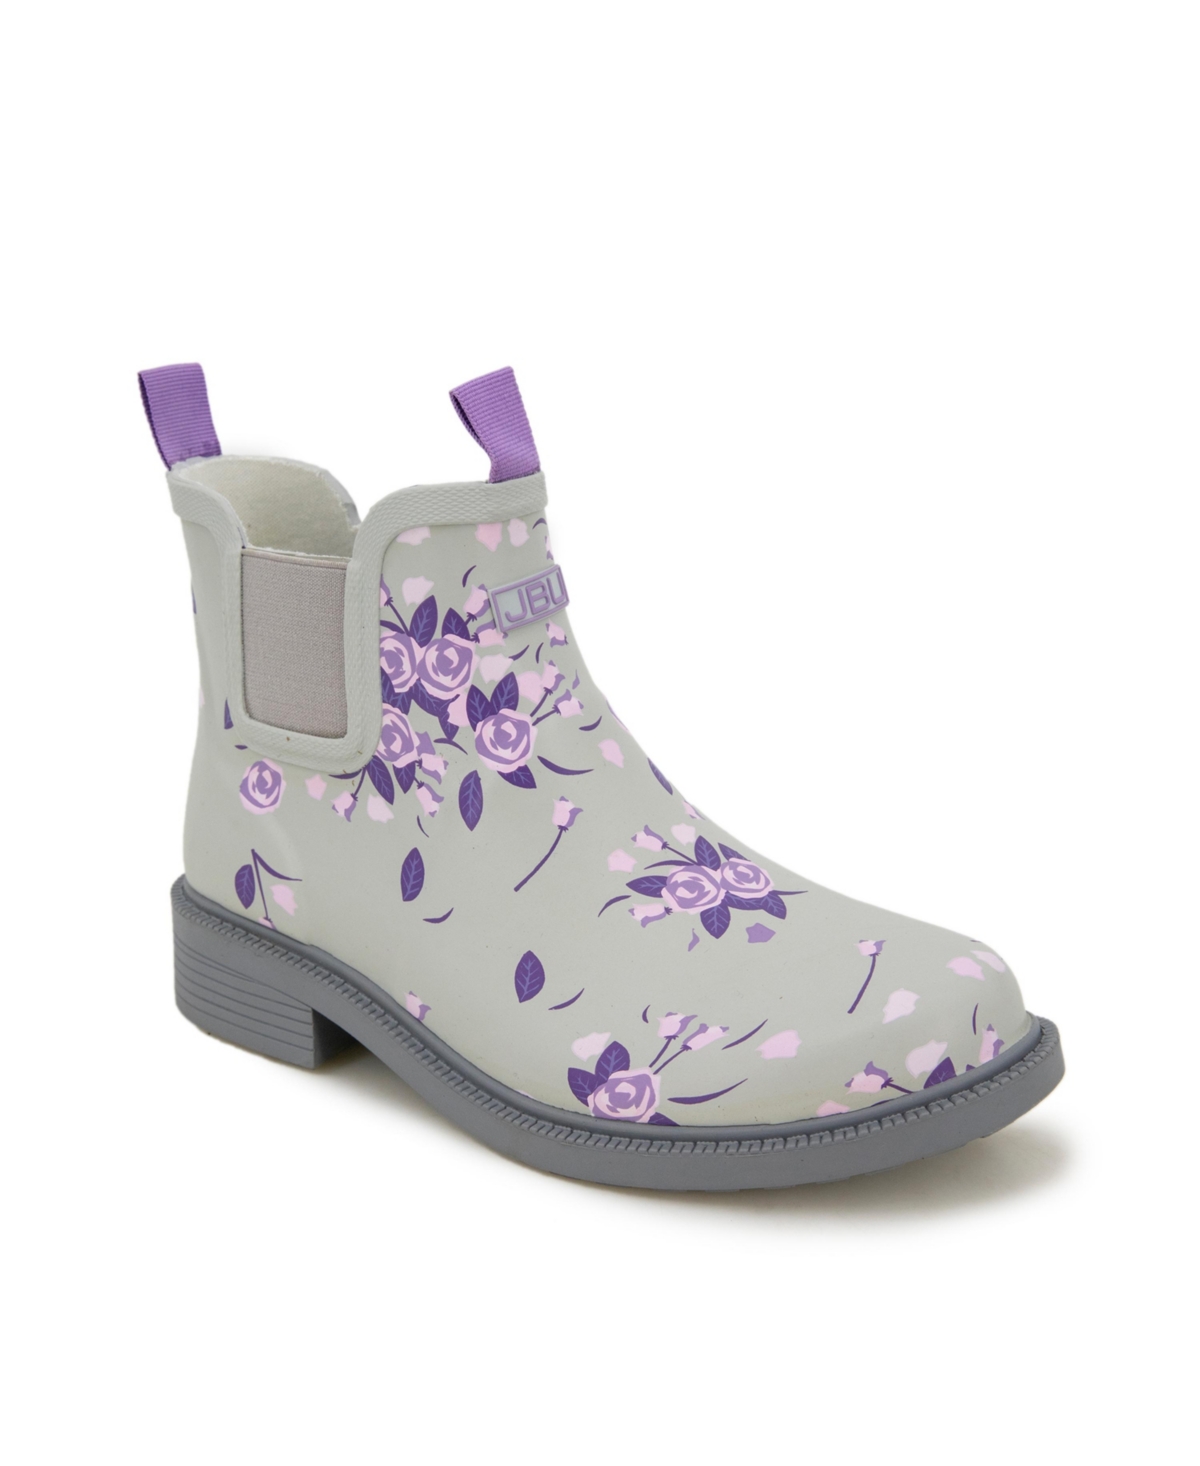 Jbu Women's Chelsea Floral Waterproof Rain Boots Women's Shoes